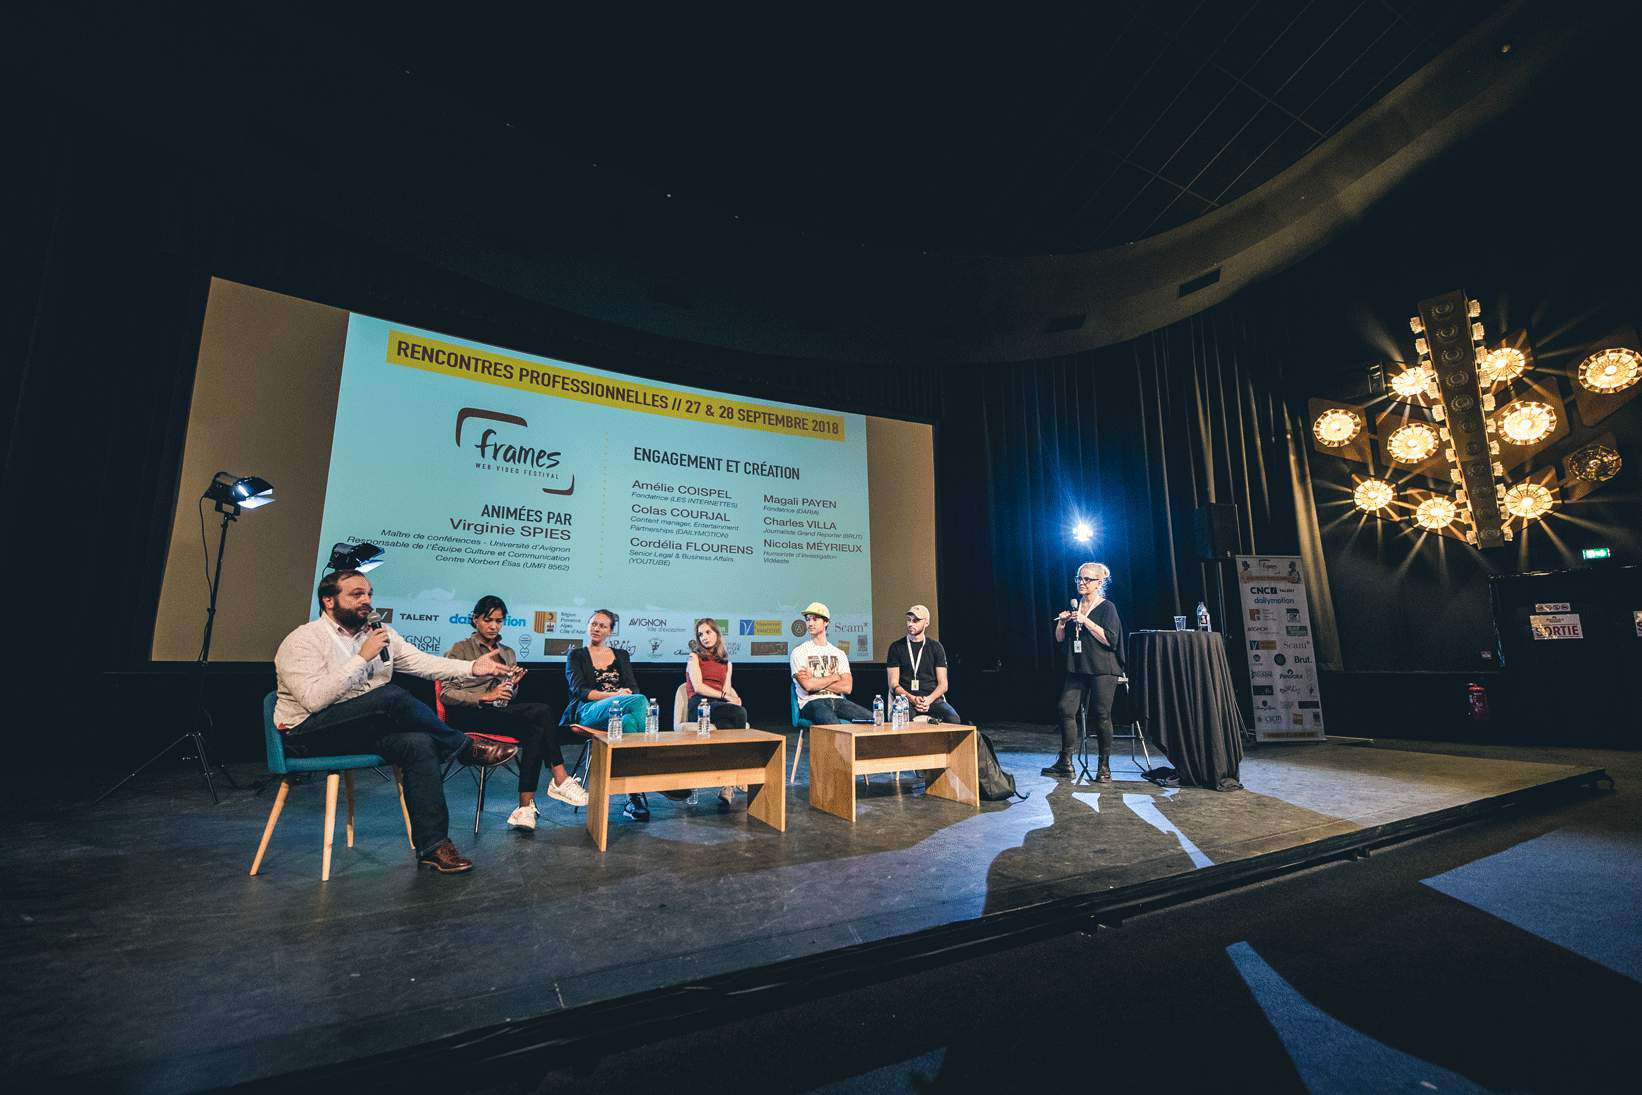 Bilan Frames festival 2018, photo de la conférence sur l'engagement en création animée par Virginie Spies